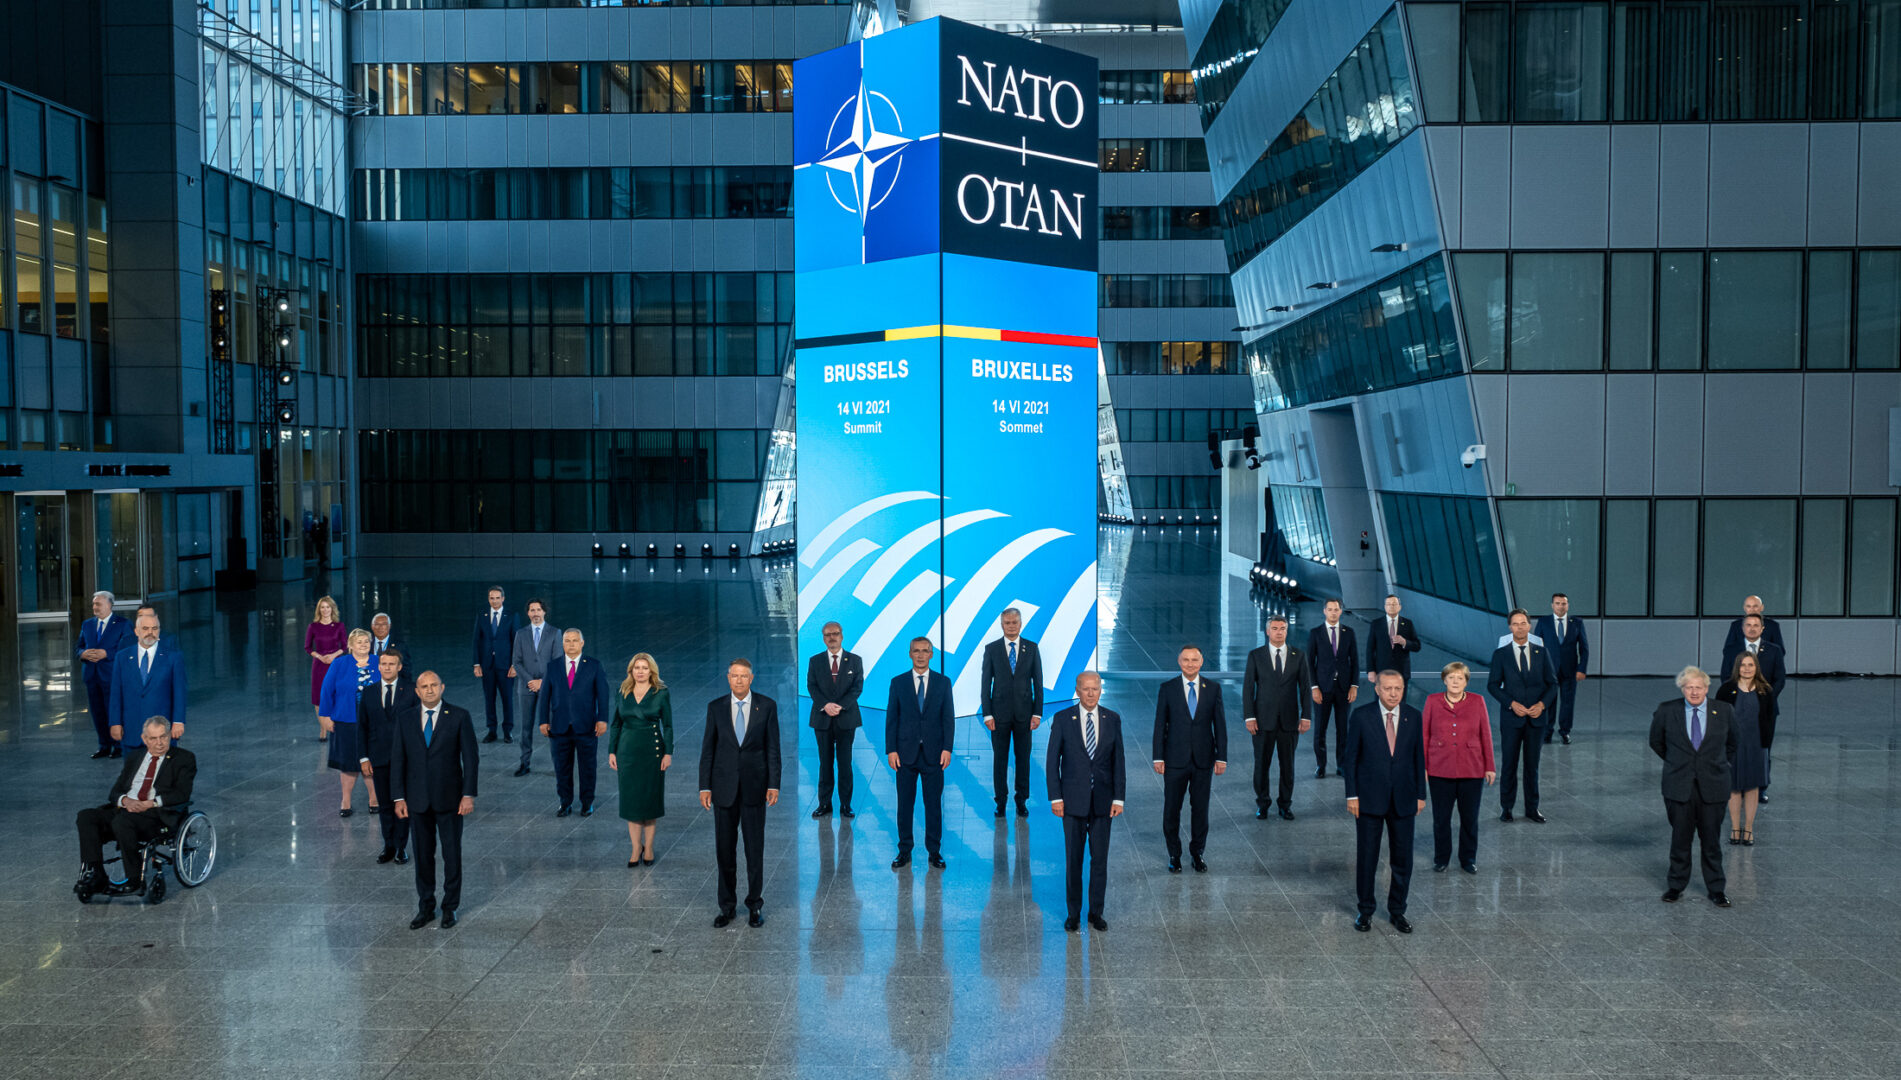 Poza oficiala de grup a liderilor statelor membre NATO